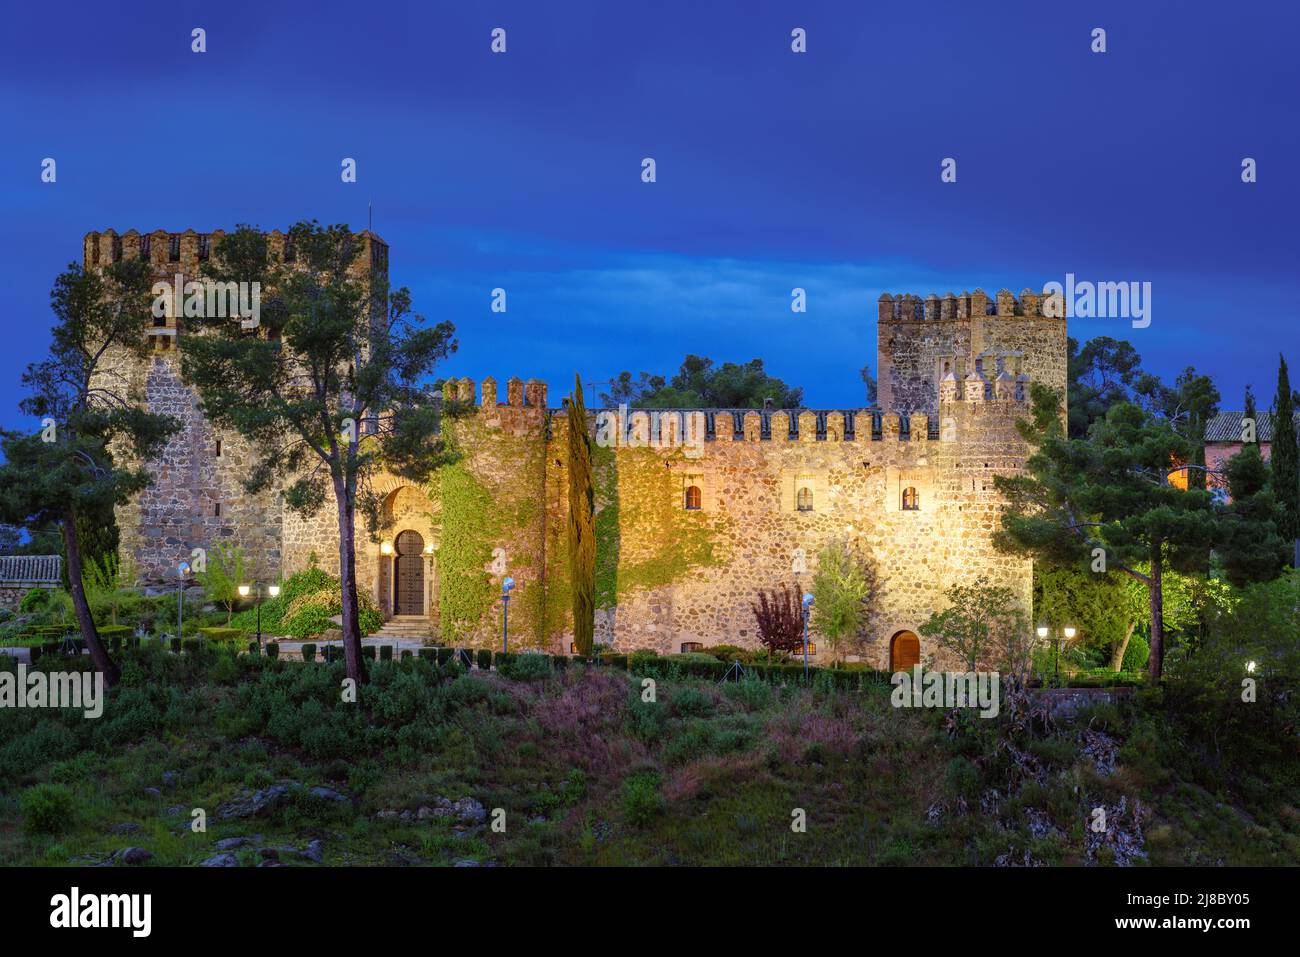 Blick auf die Burg San Servando mittelalterliches Baudenkmal in Toledo, Castilla la Mancha, Spanien Stockfoto